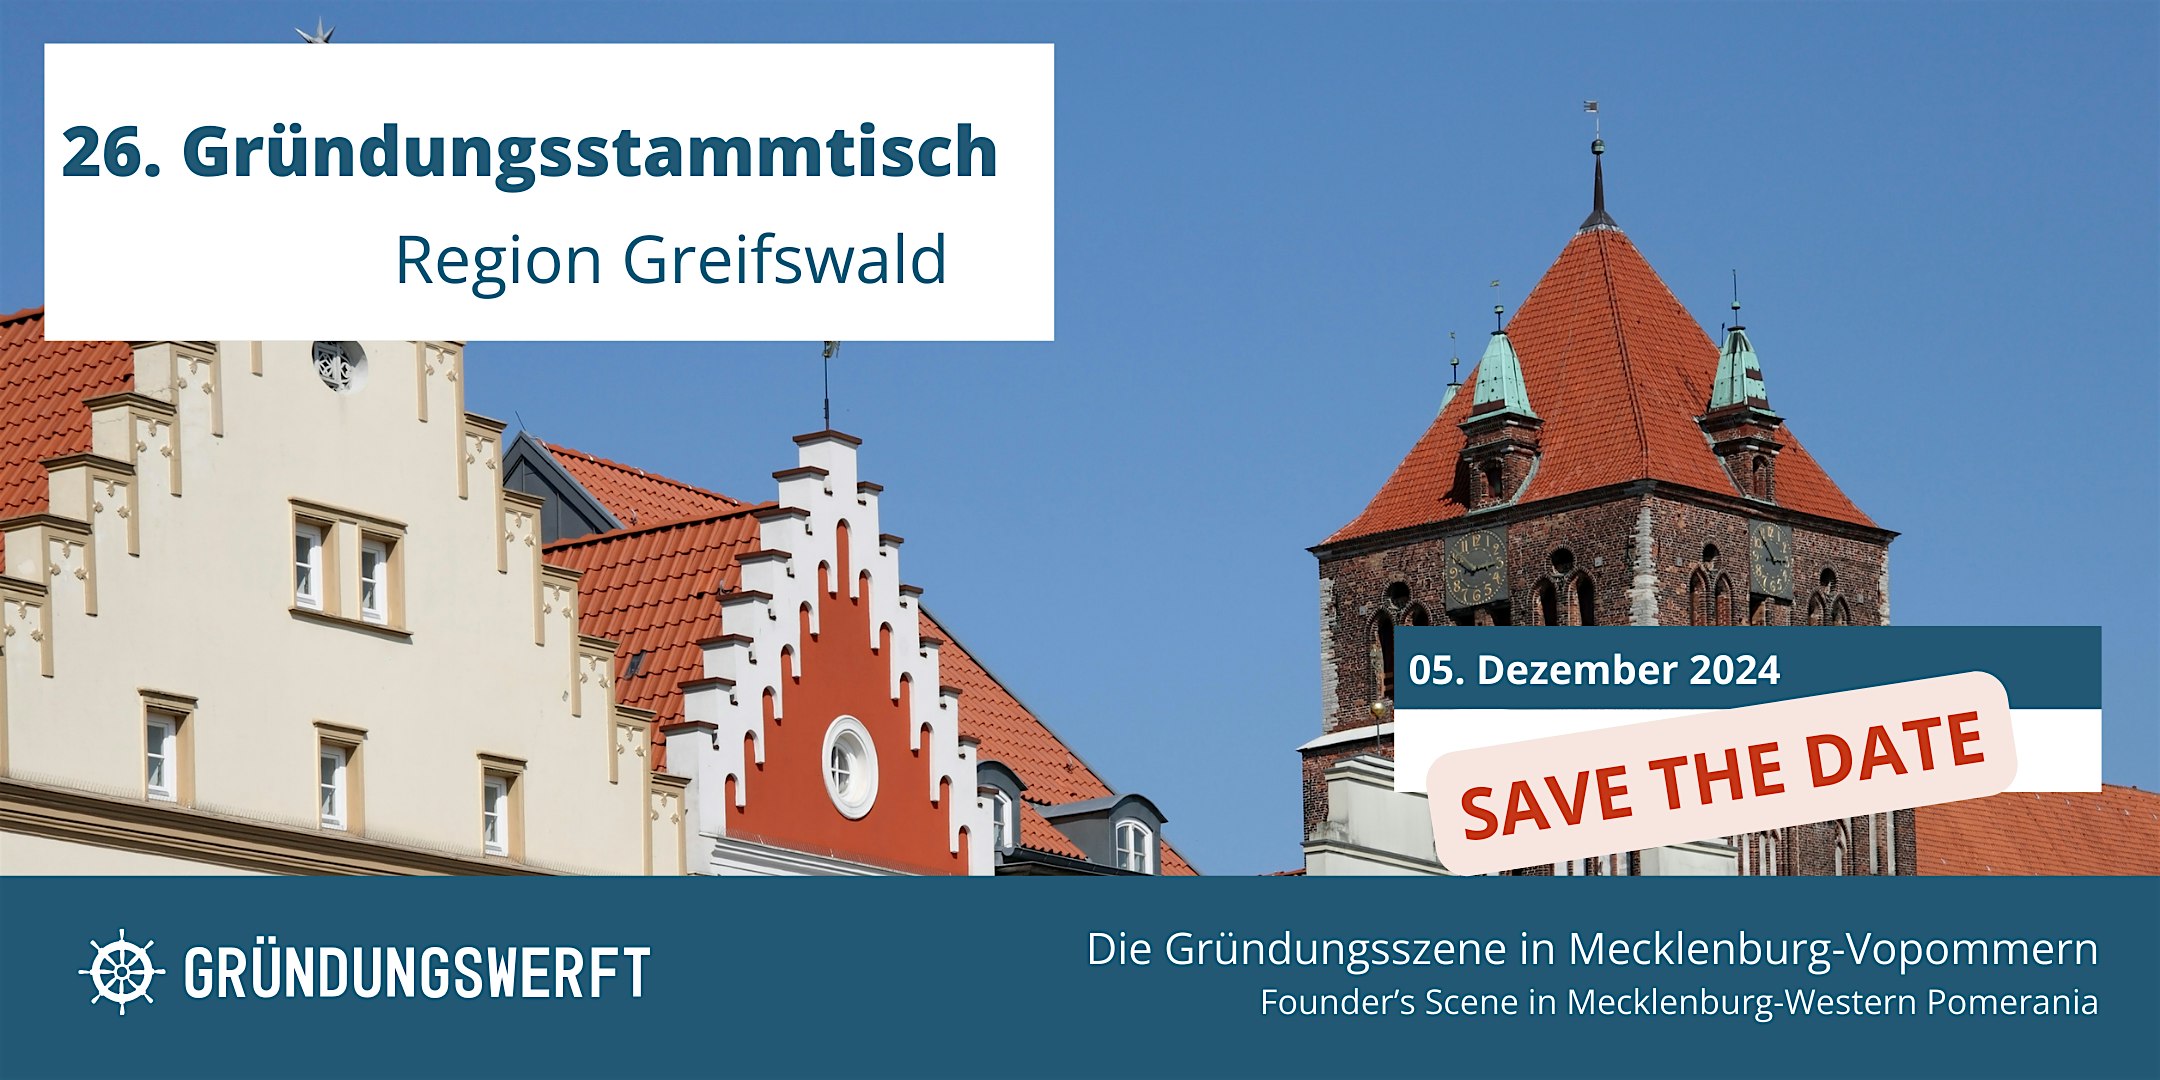 Veranstaltungsbild für die Veranstaltung 26. Gründungsstammtisch Greifswald SAVE THE DATE